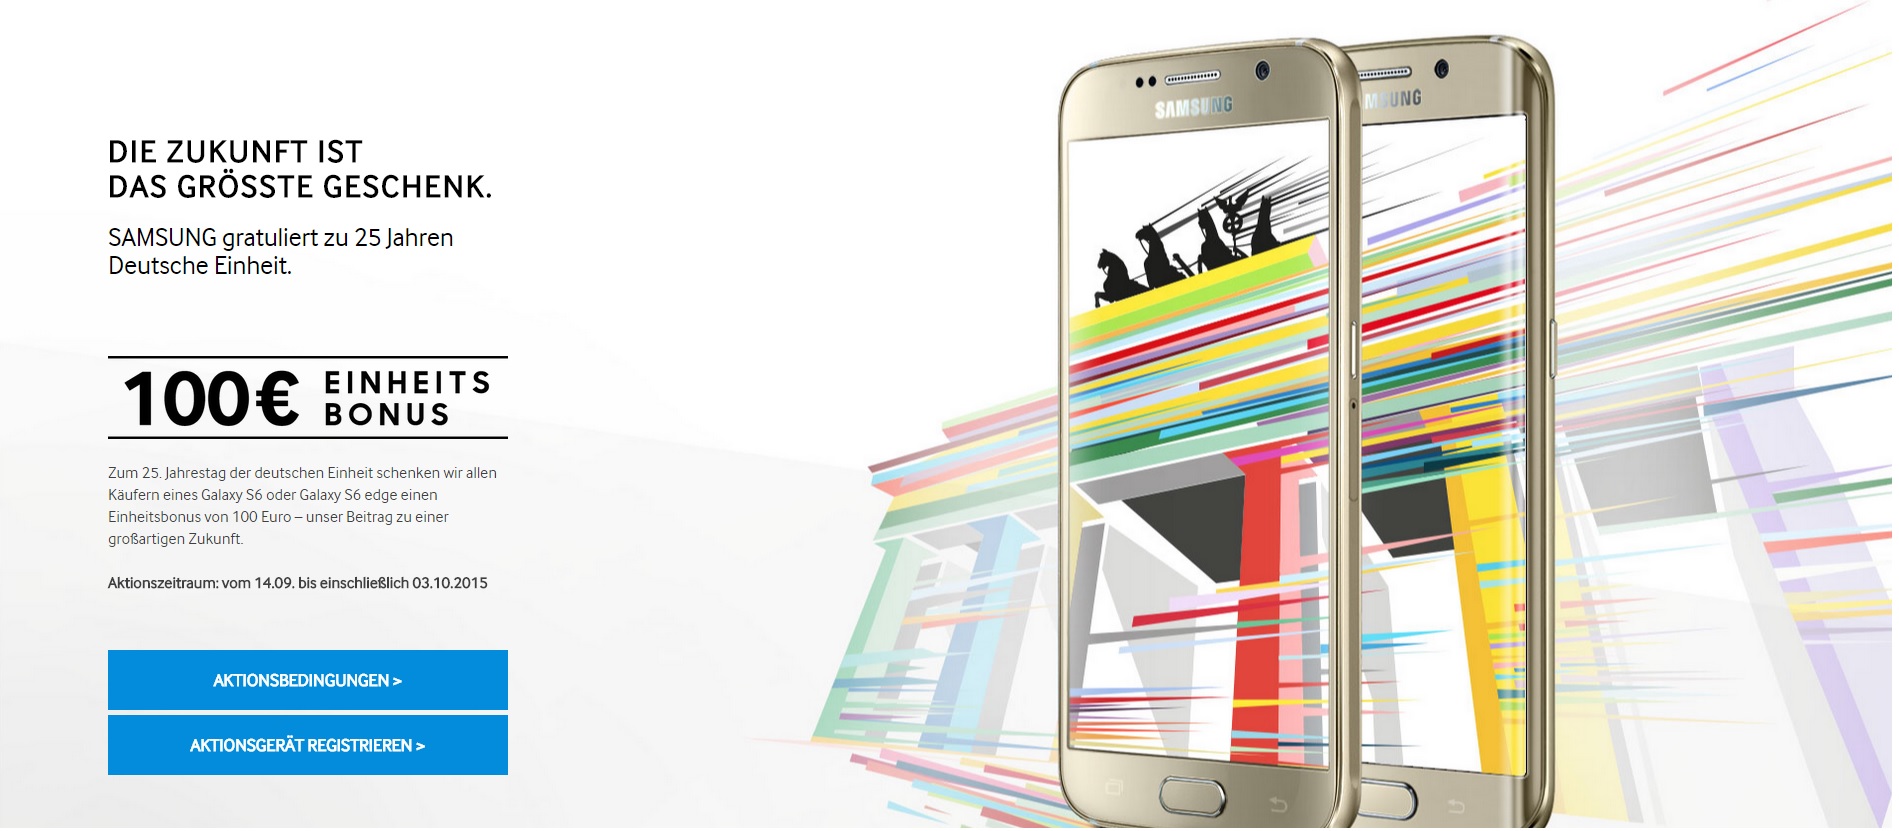 Einheitsbonus – Samsung Galaxy S6 & S6 edge 100 Euro Cashback